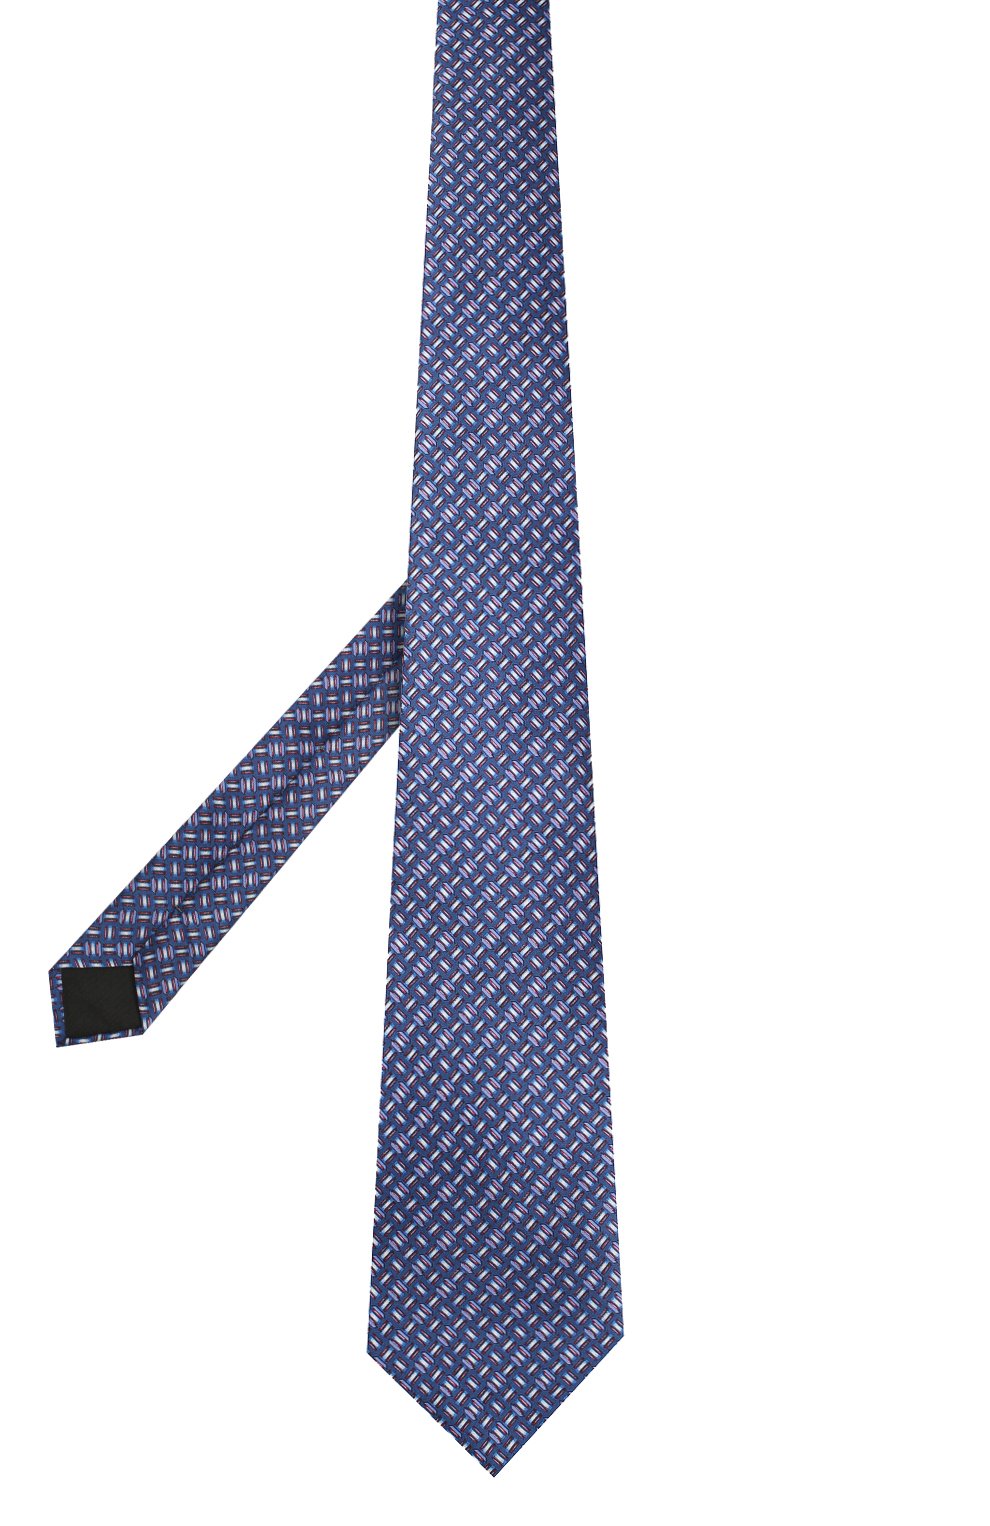 Мужской комплект из галстука и платка LANVIN синего цвета, арт. 4256/TIE SET | Фото 2 (Материал: Текстиль, Шелк)